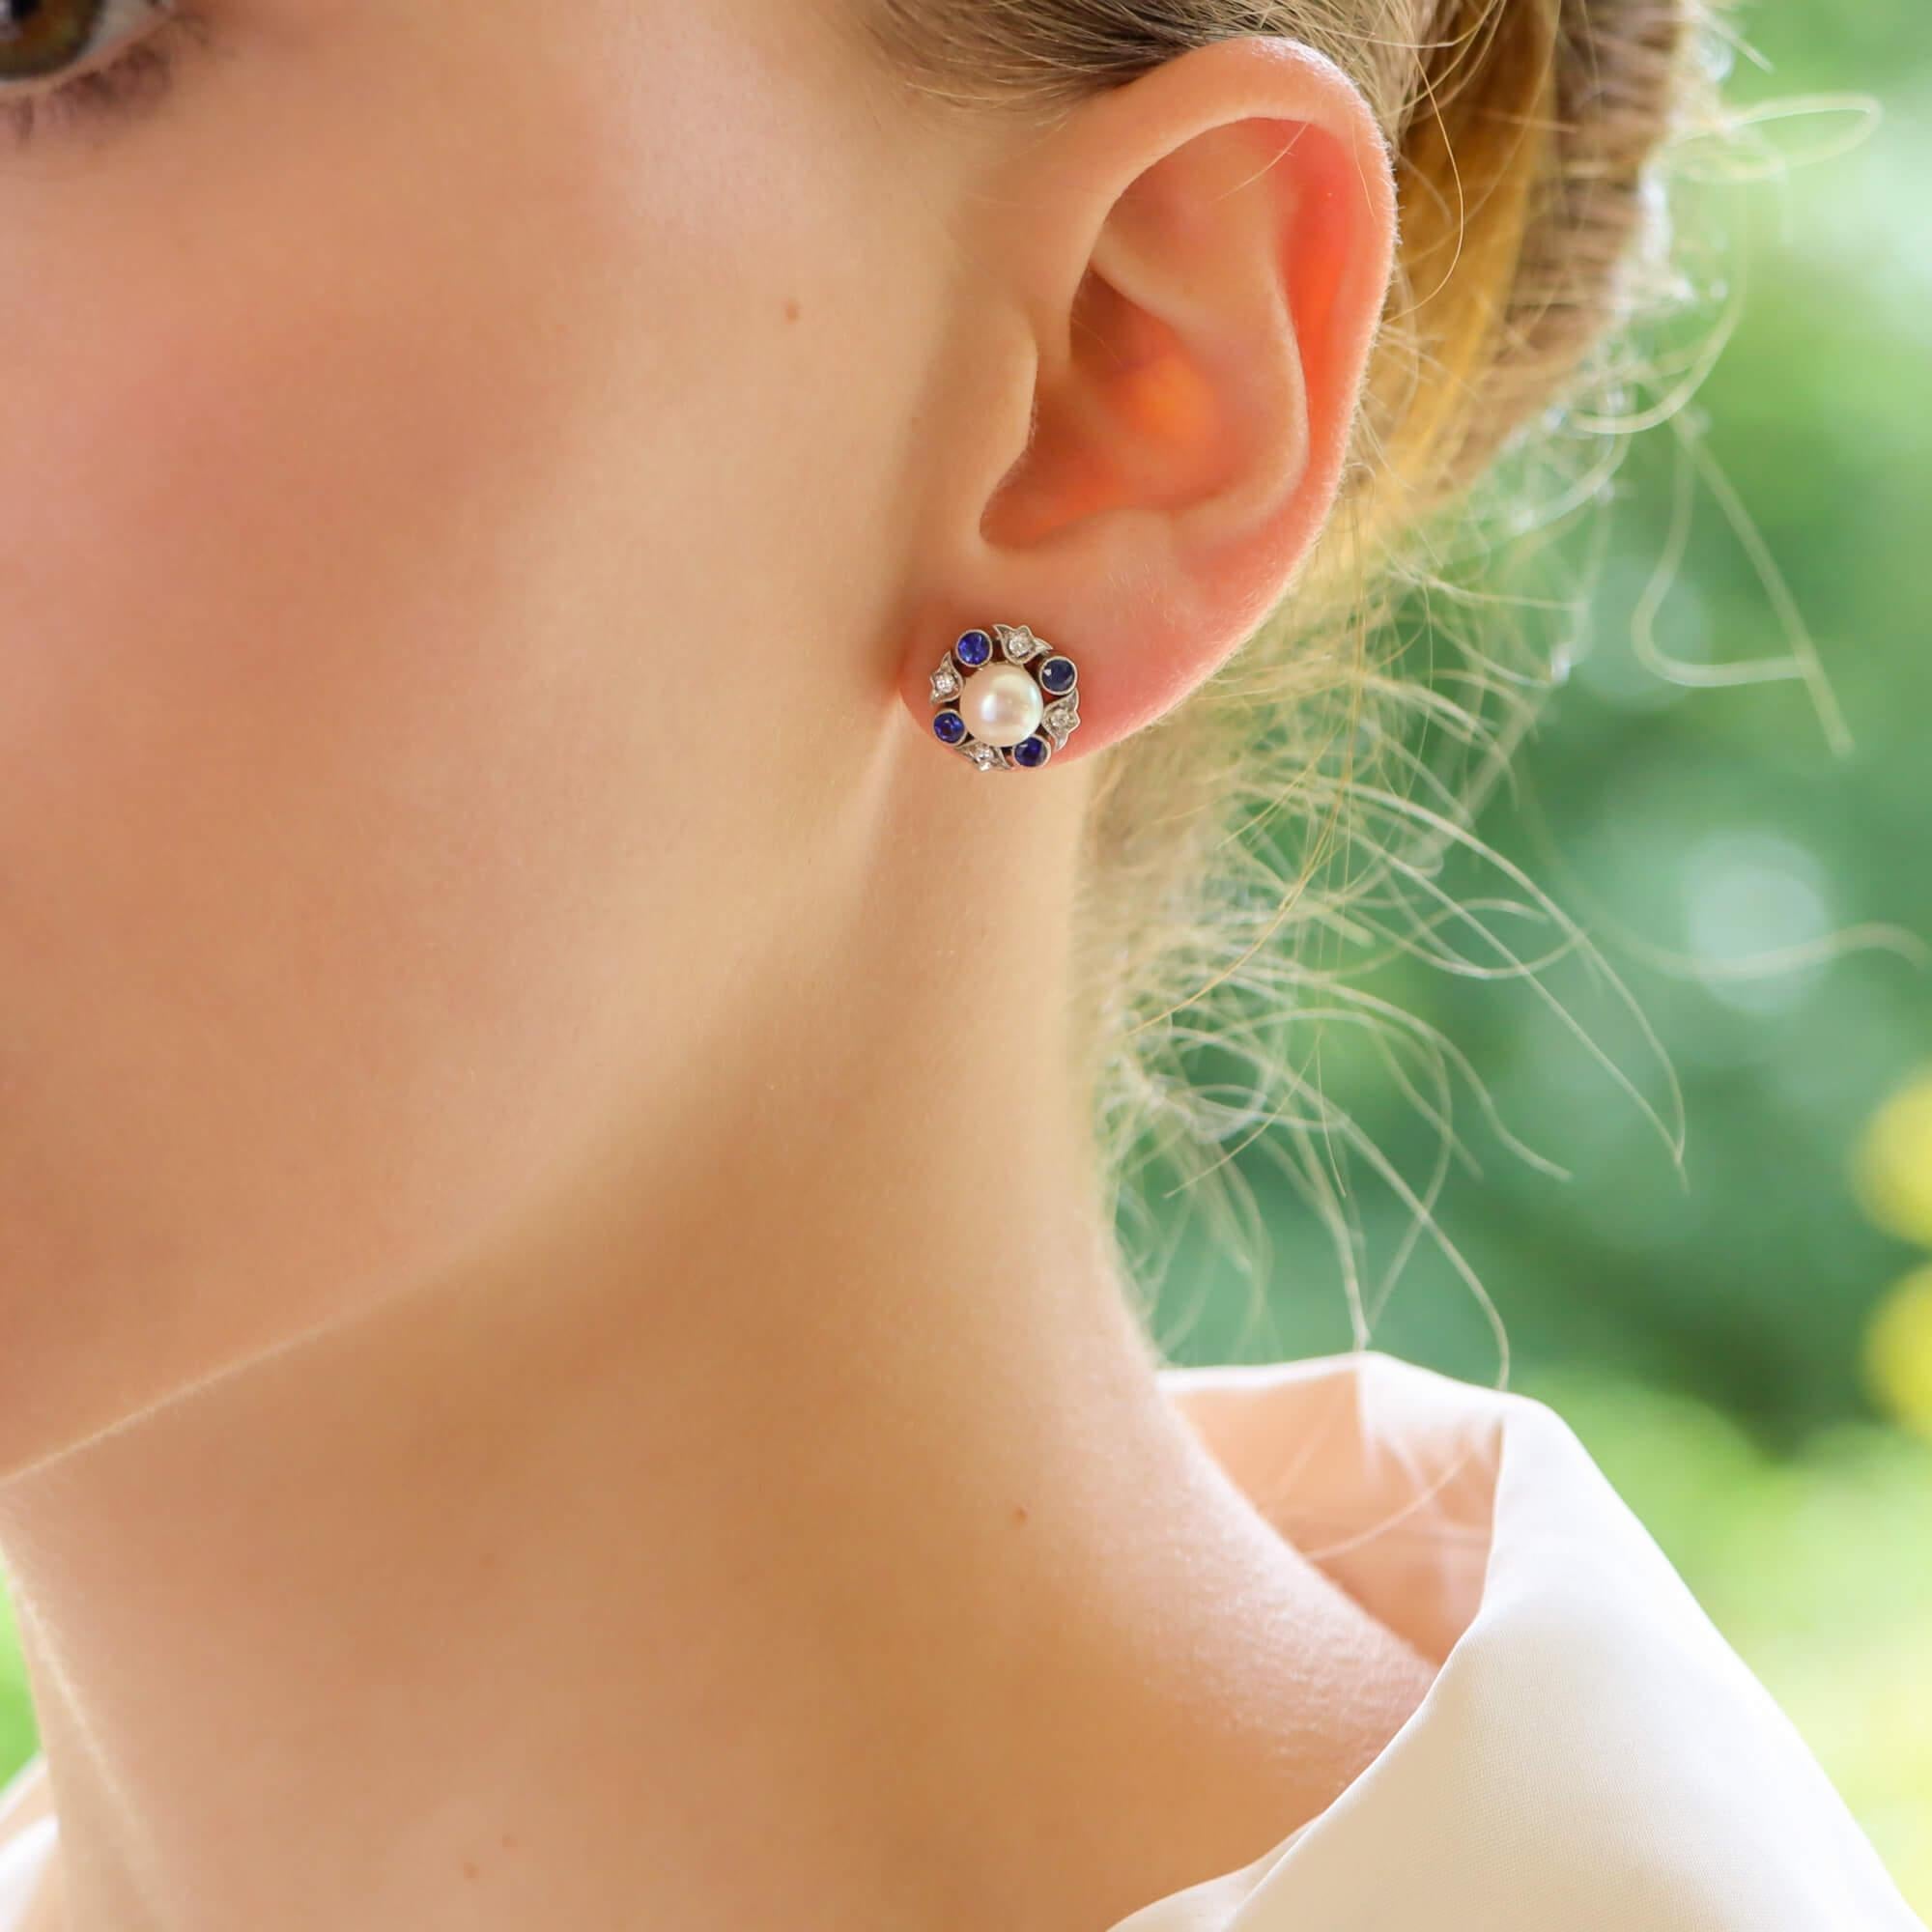 Ein äußerst elegantes Paar Ohrringe mit Perlen, Diamanten und blauen Saphiren aus 18 Karat Weißgold.

In der Mitte jedes Ohrrings befindet sich eine glänzende weiße Zuchtperle, die von einem abstrakten Halo aus geschliffenen Diamanten und blauen